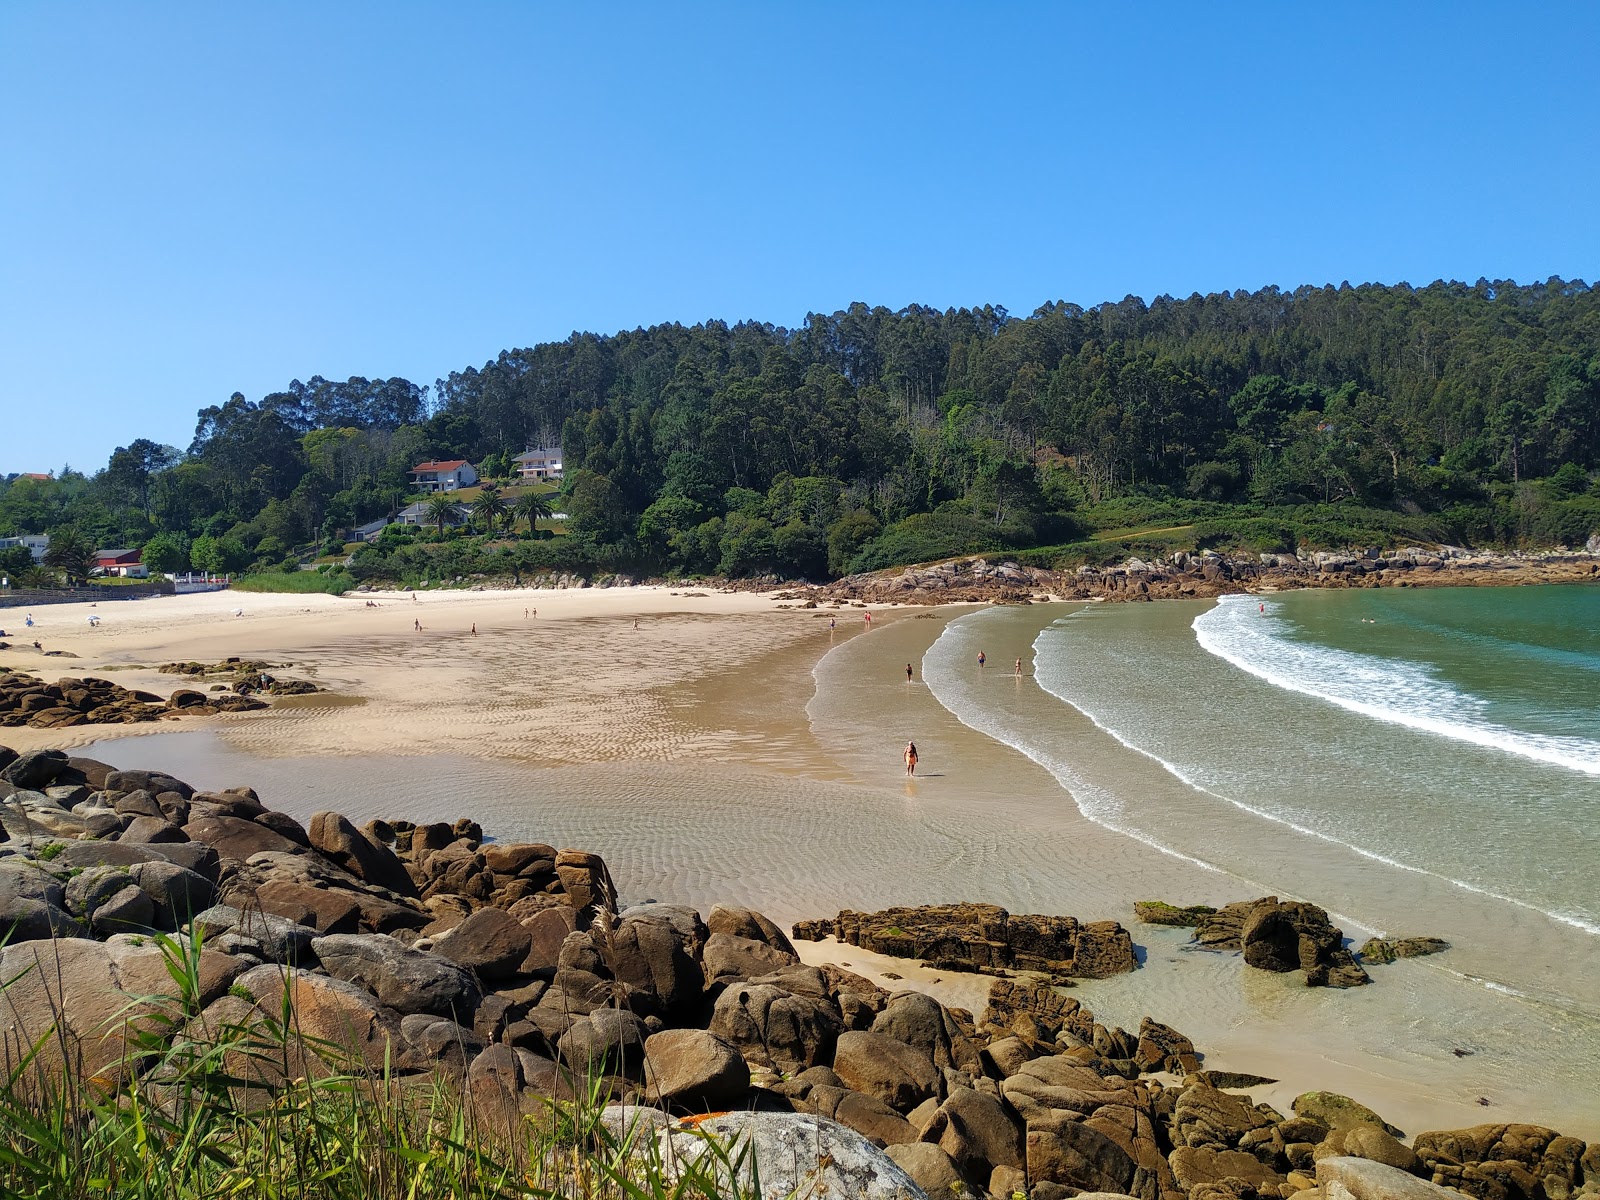 Praia de Chanteiro'in fotoğrafı geniş ile birlikte